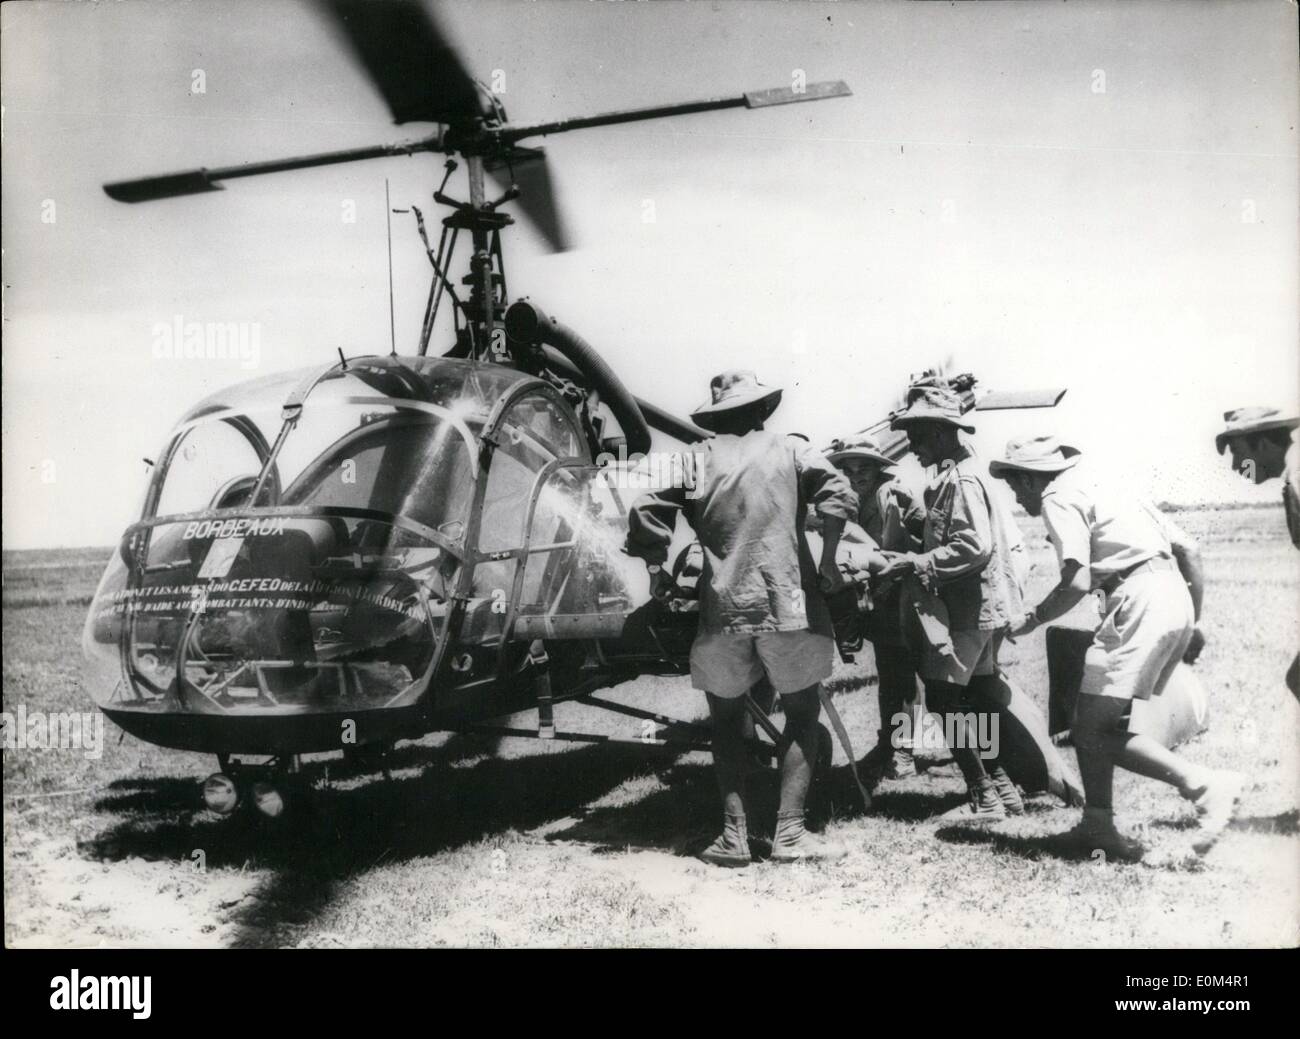 Agosto 08, 1953 - La guerra in Indo Cina: uno degli elicotteri utilizzati per il trasporto di feriti in Indo Cina. Foto Stock